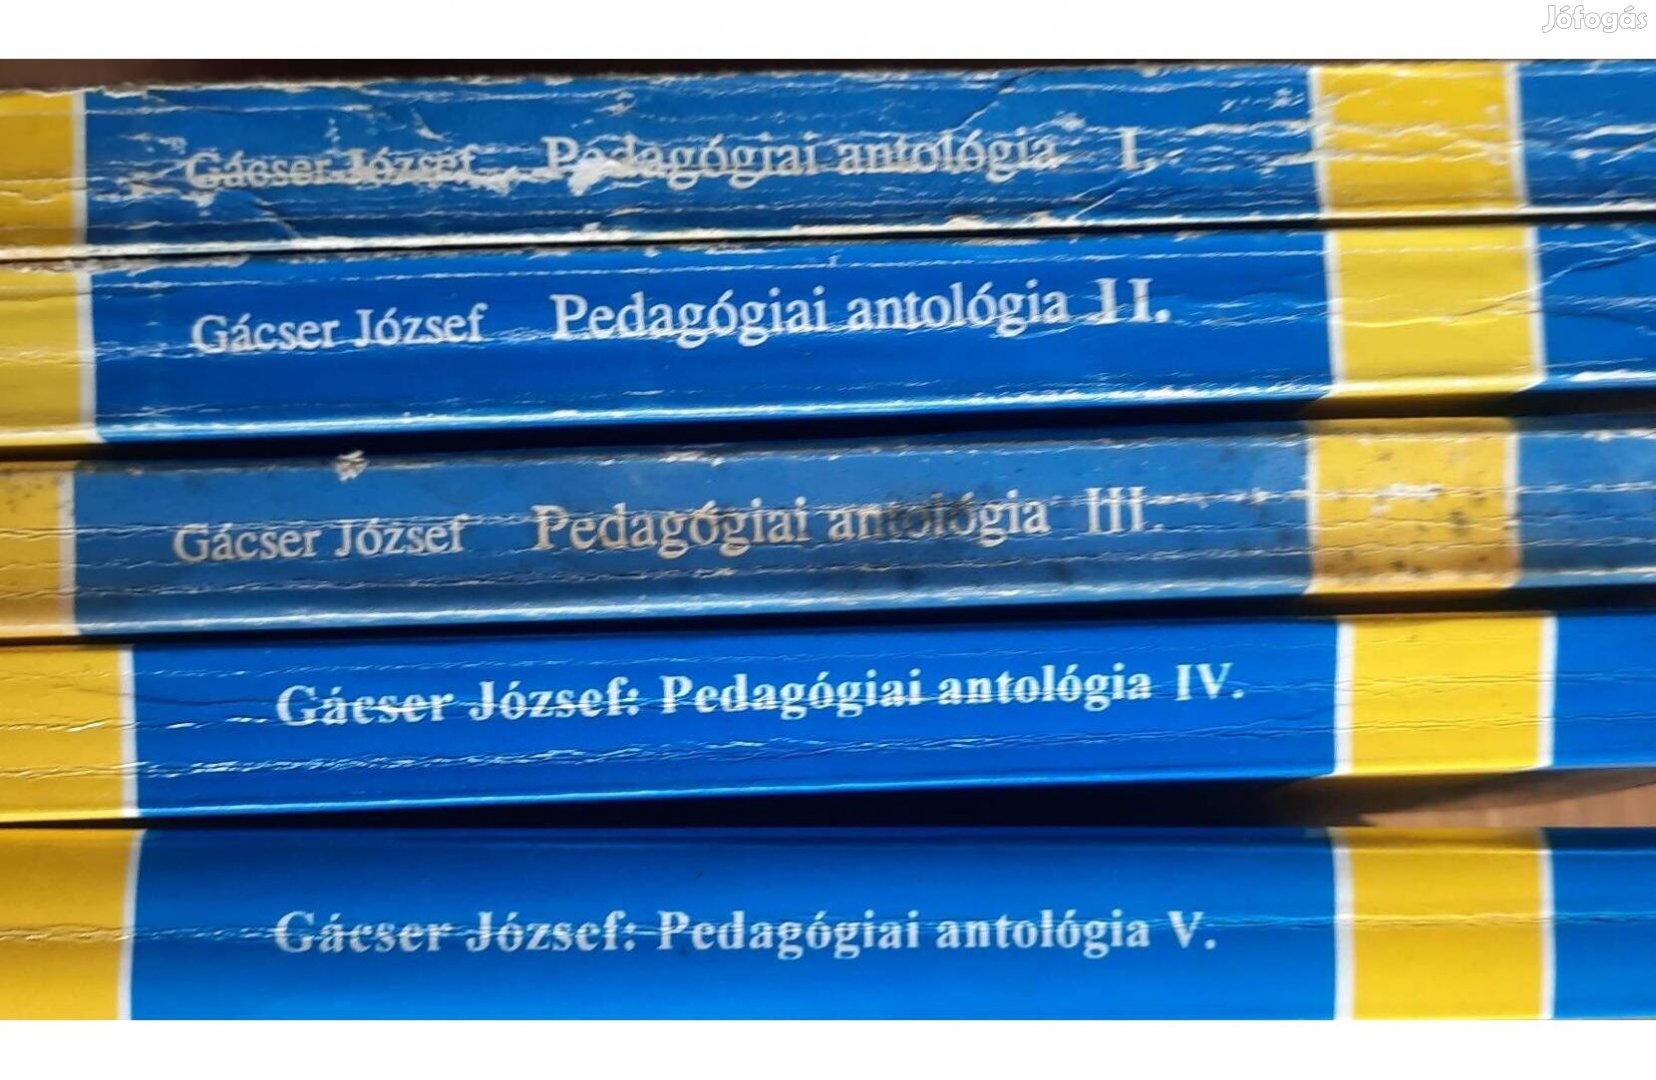 5 kötetes Pedagógiai antológia című kiadvány eladó